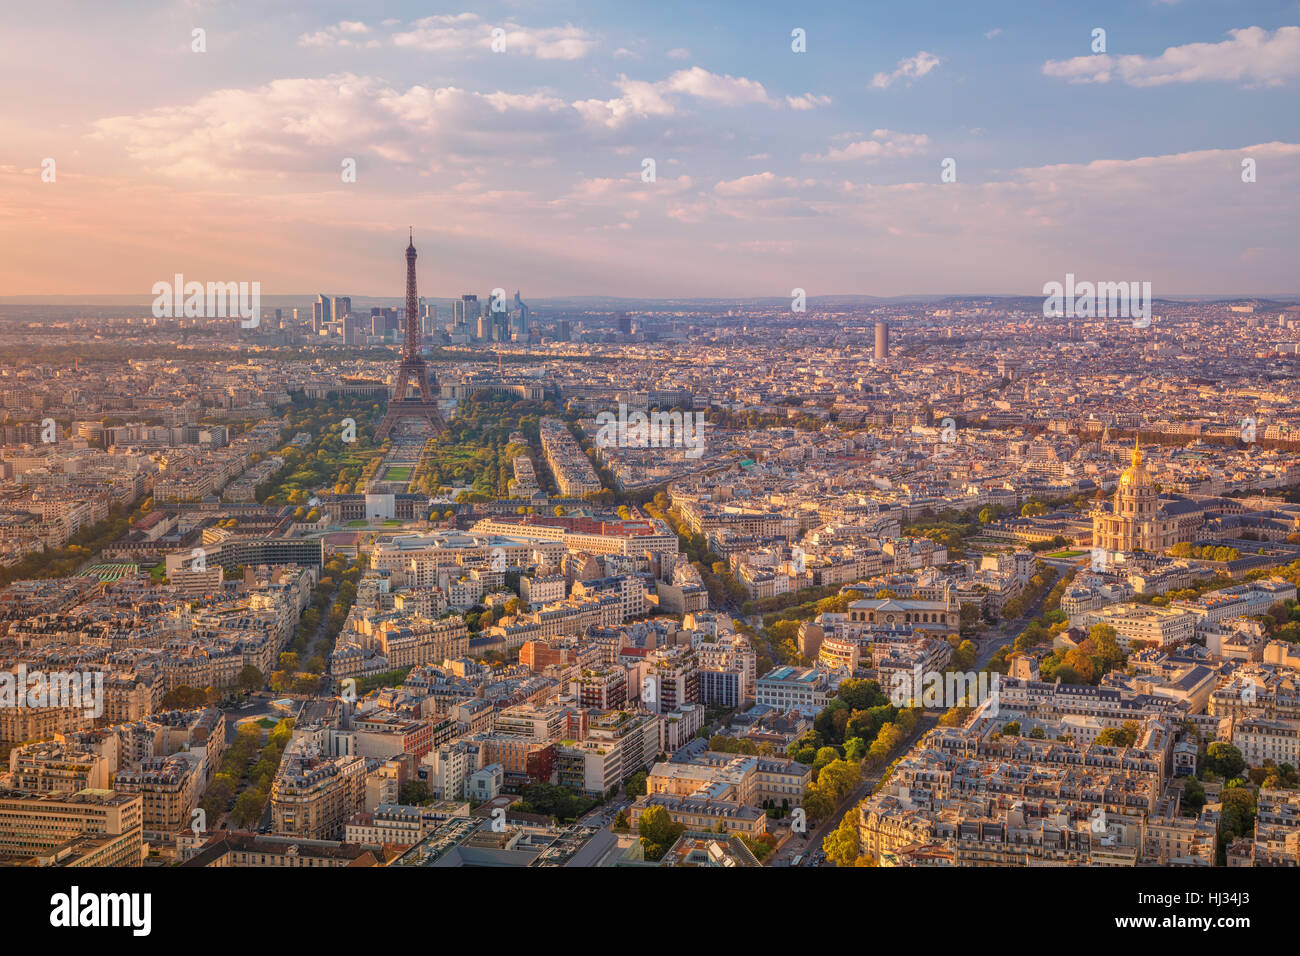 Ciudad de París, Francia. Imagen aérea de París, Francia, durante la hora del atardecer dorado. Foto de stock